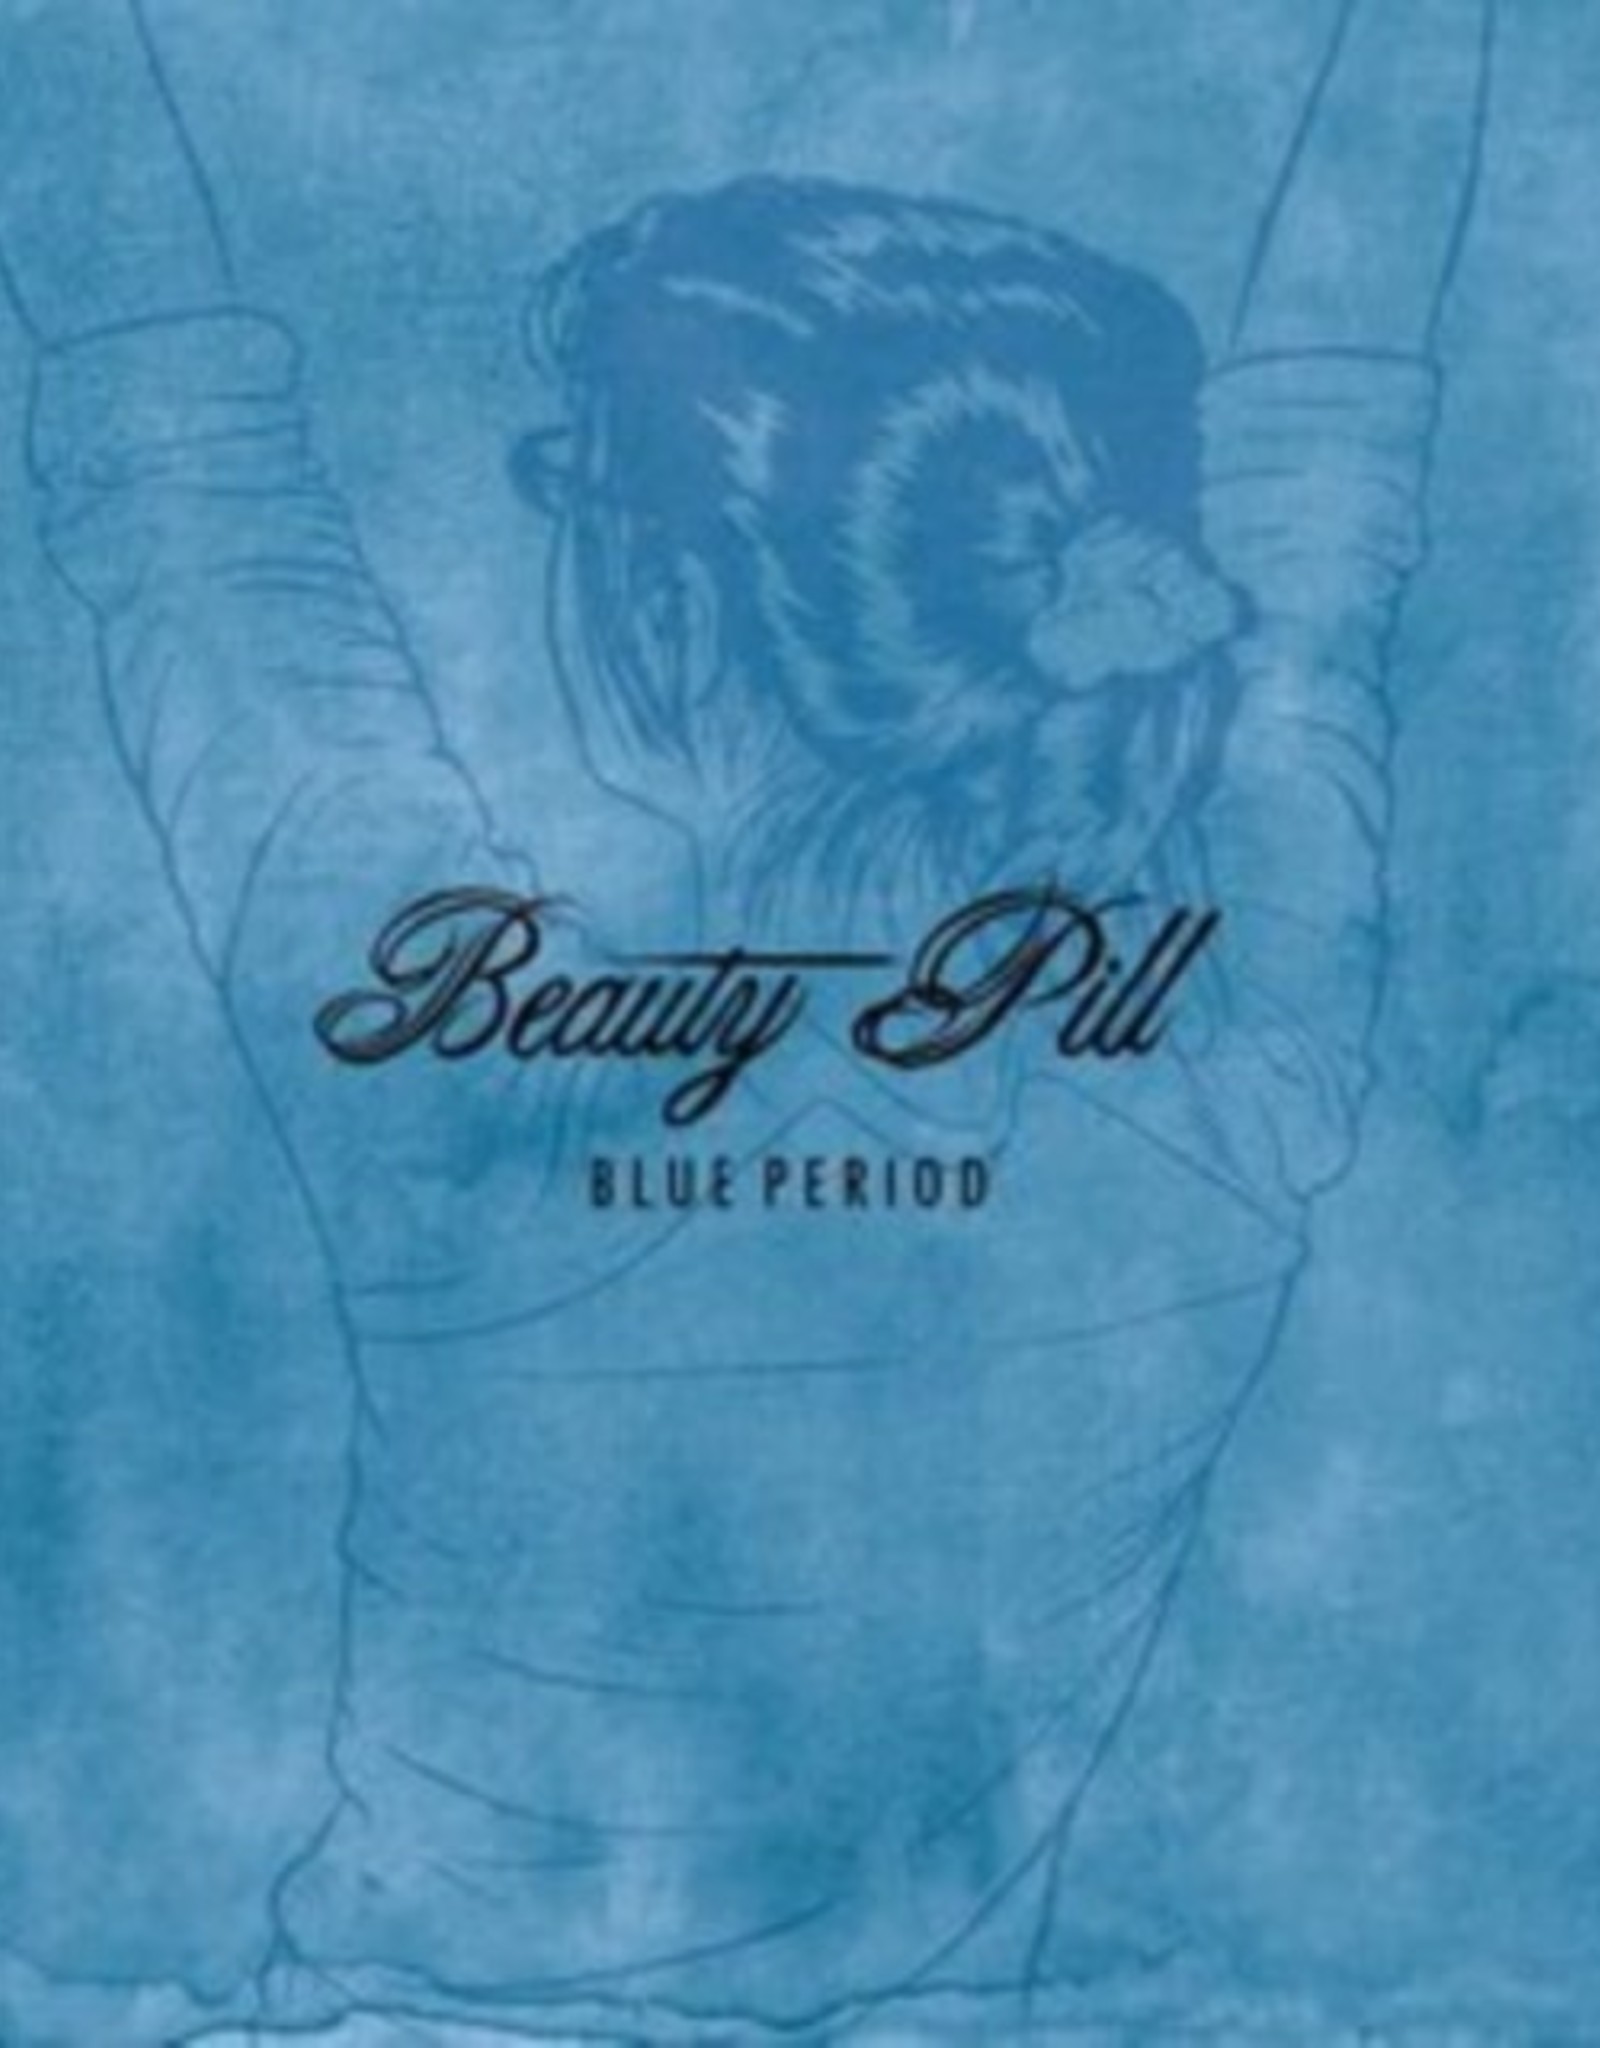 Beauty Pill - Blue Period